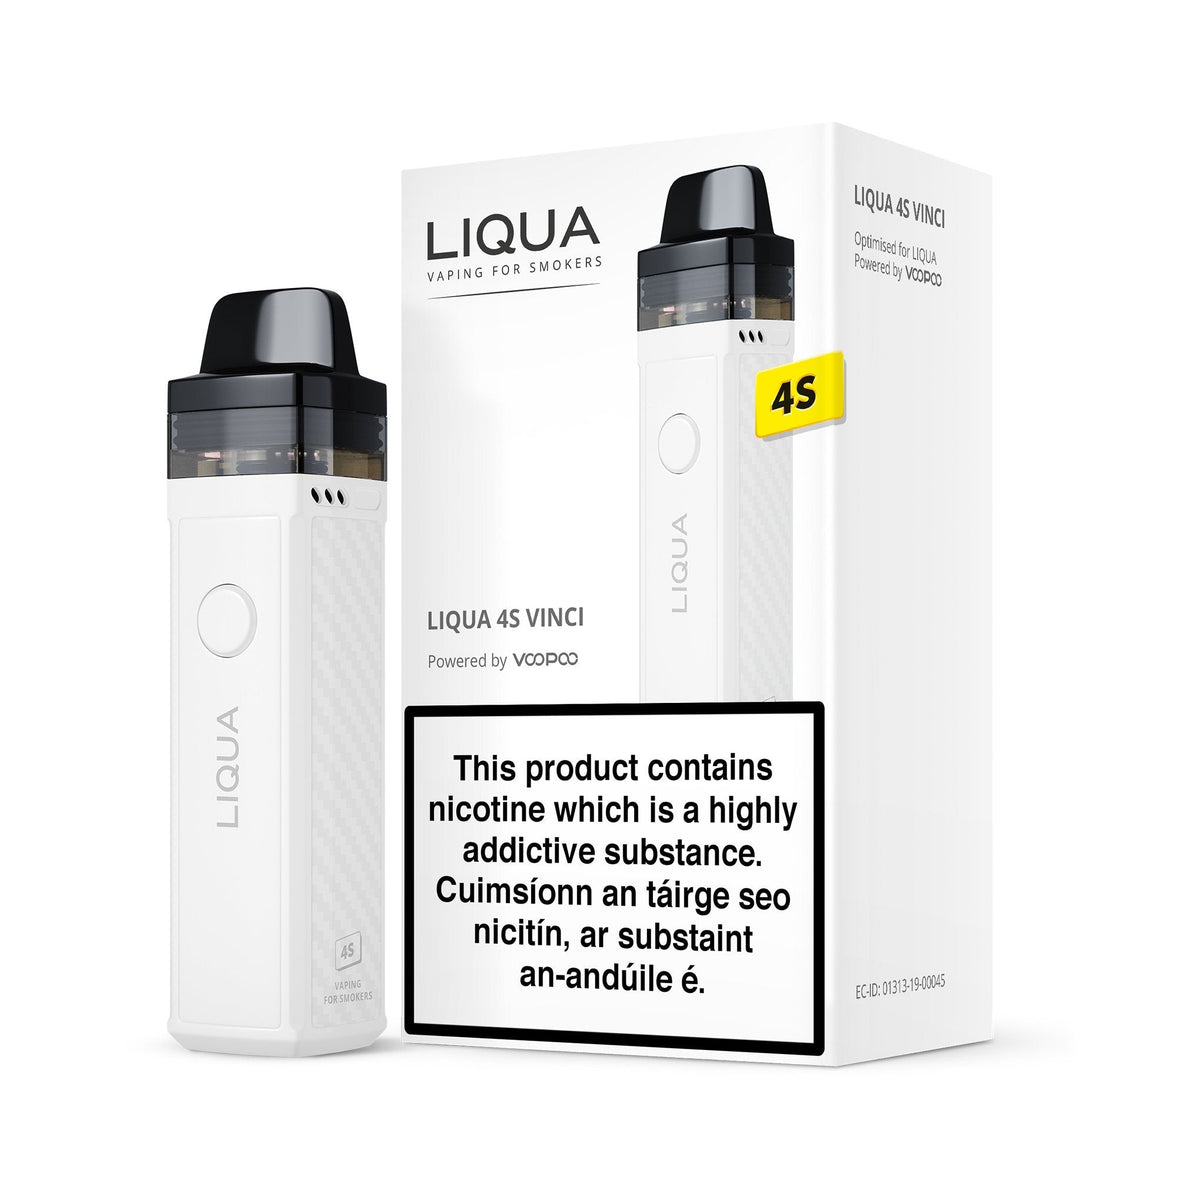 Liqua 4S Vinci R Kit White